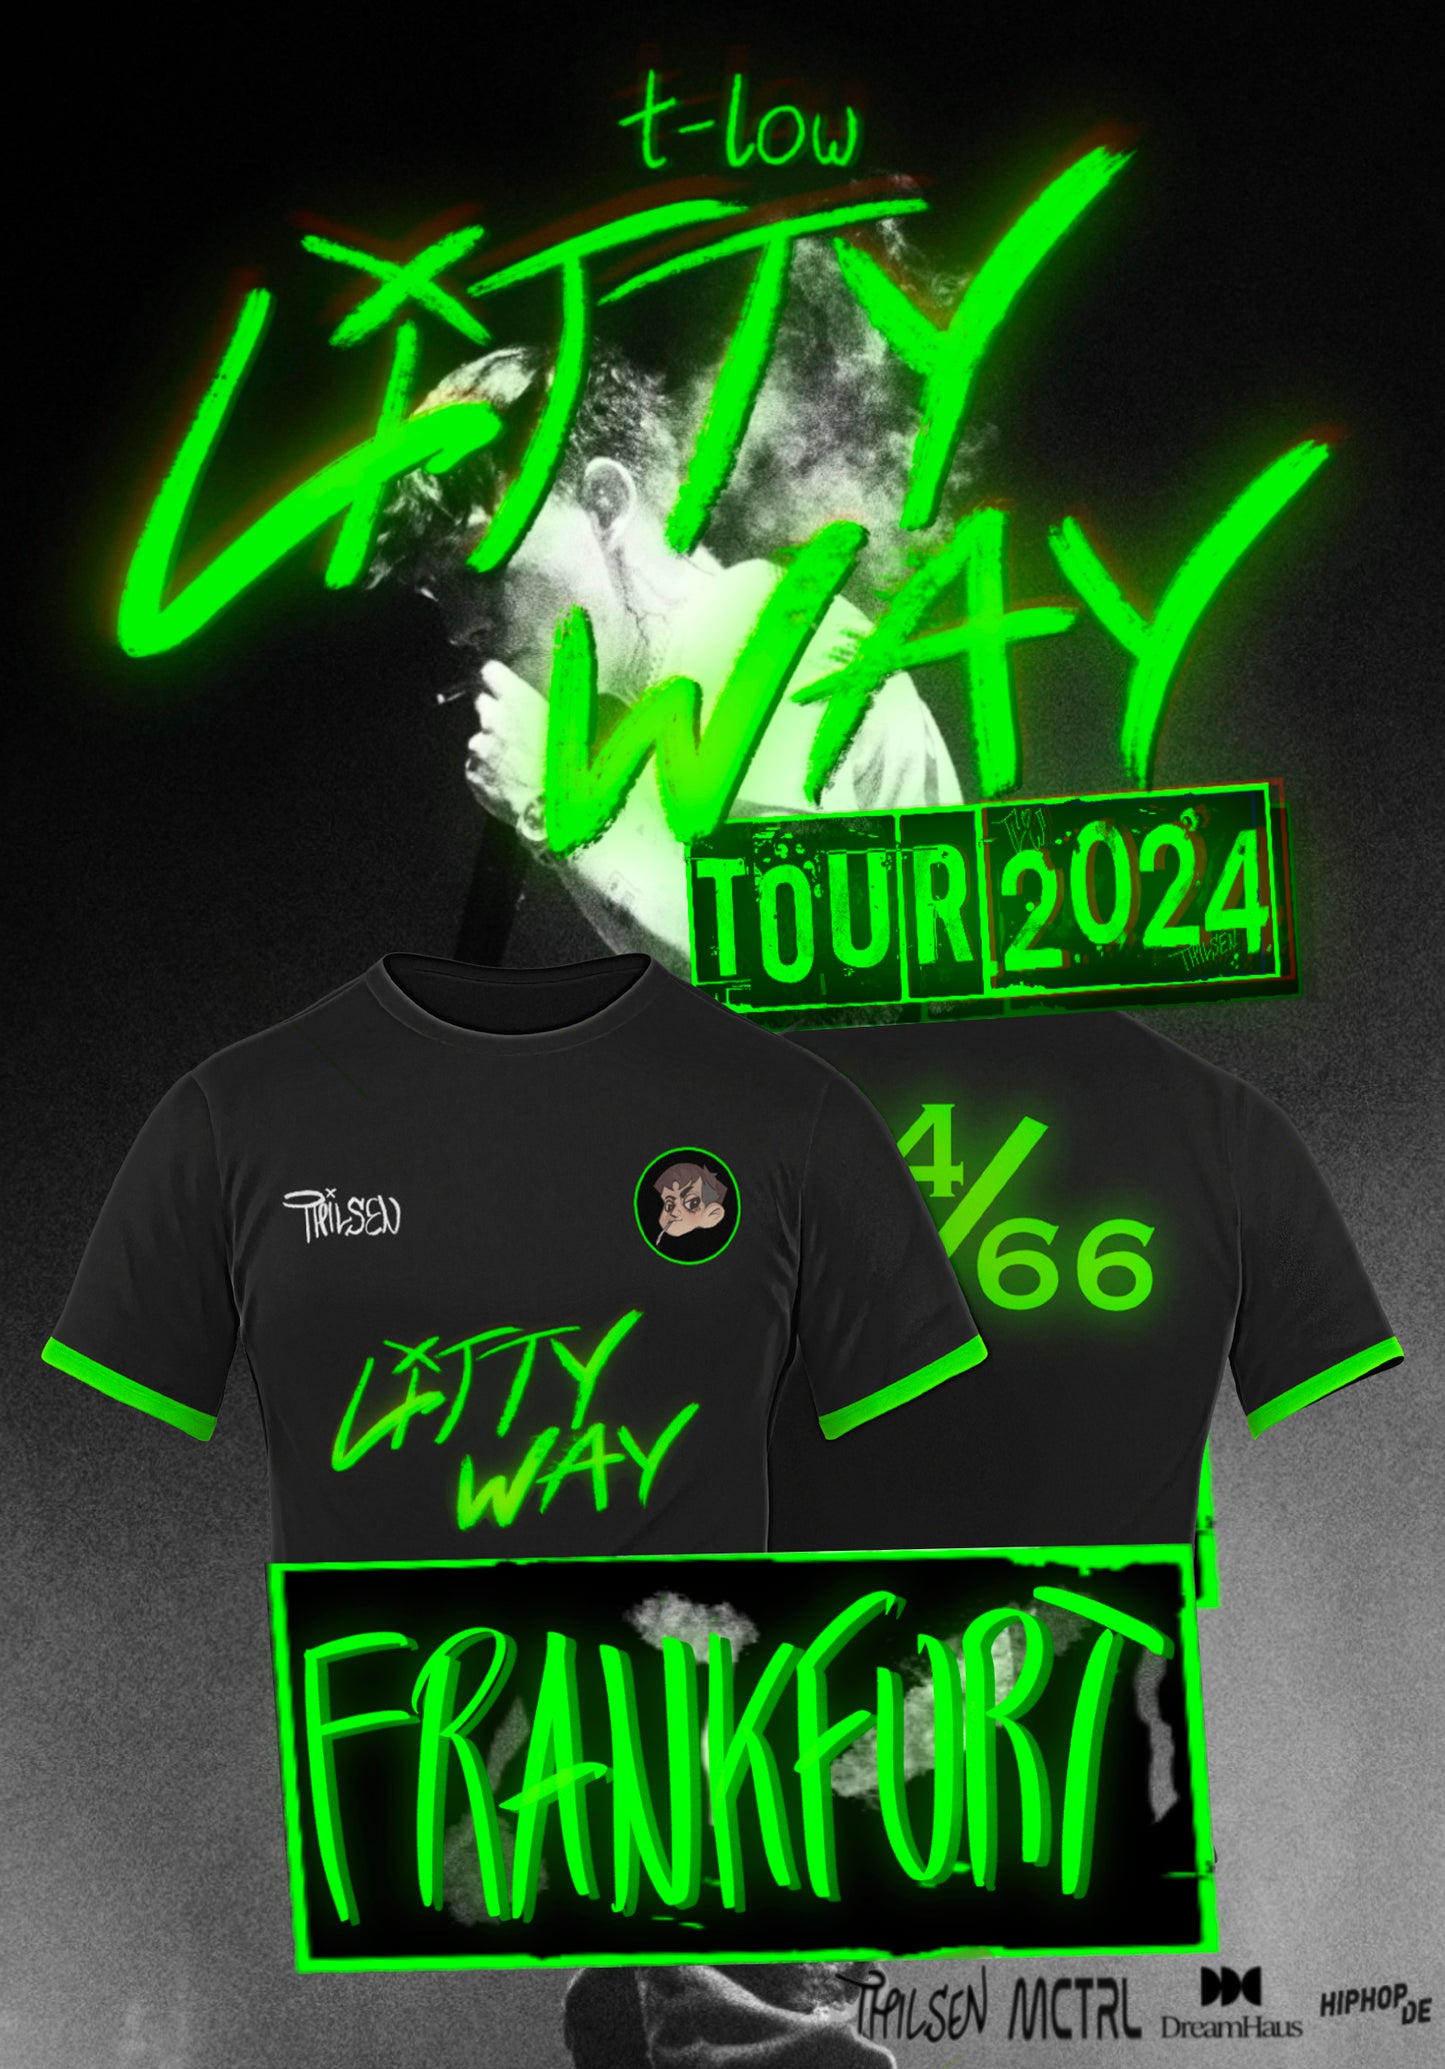 E-Ticket & Trikot Bundle - t-low Litty Way Tour 2024 Frankfurt